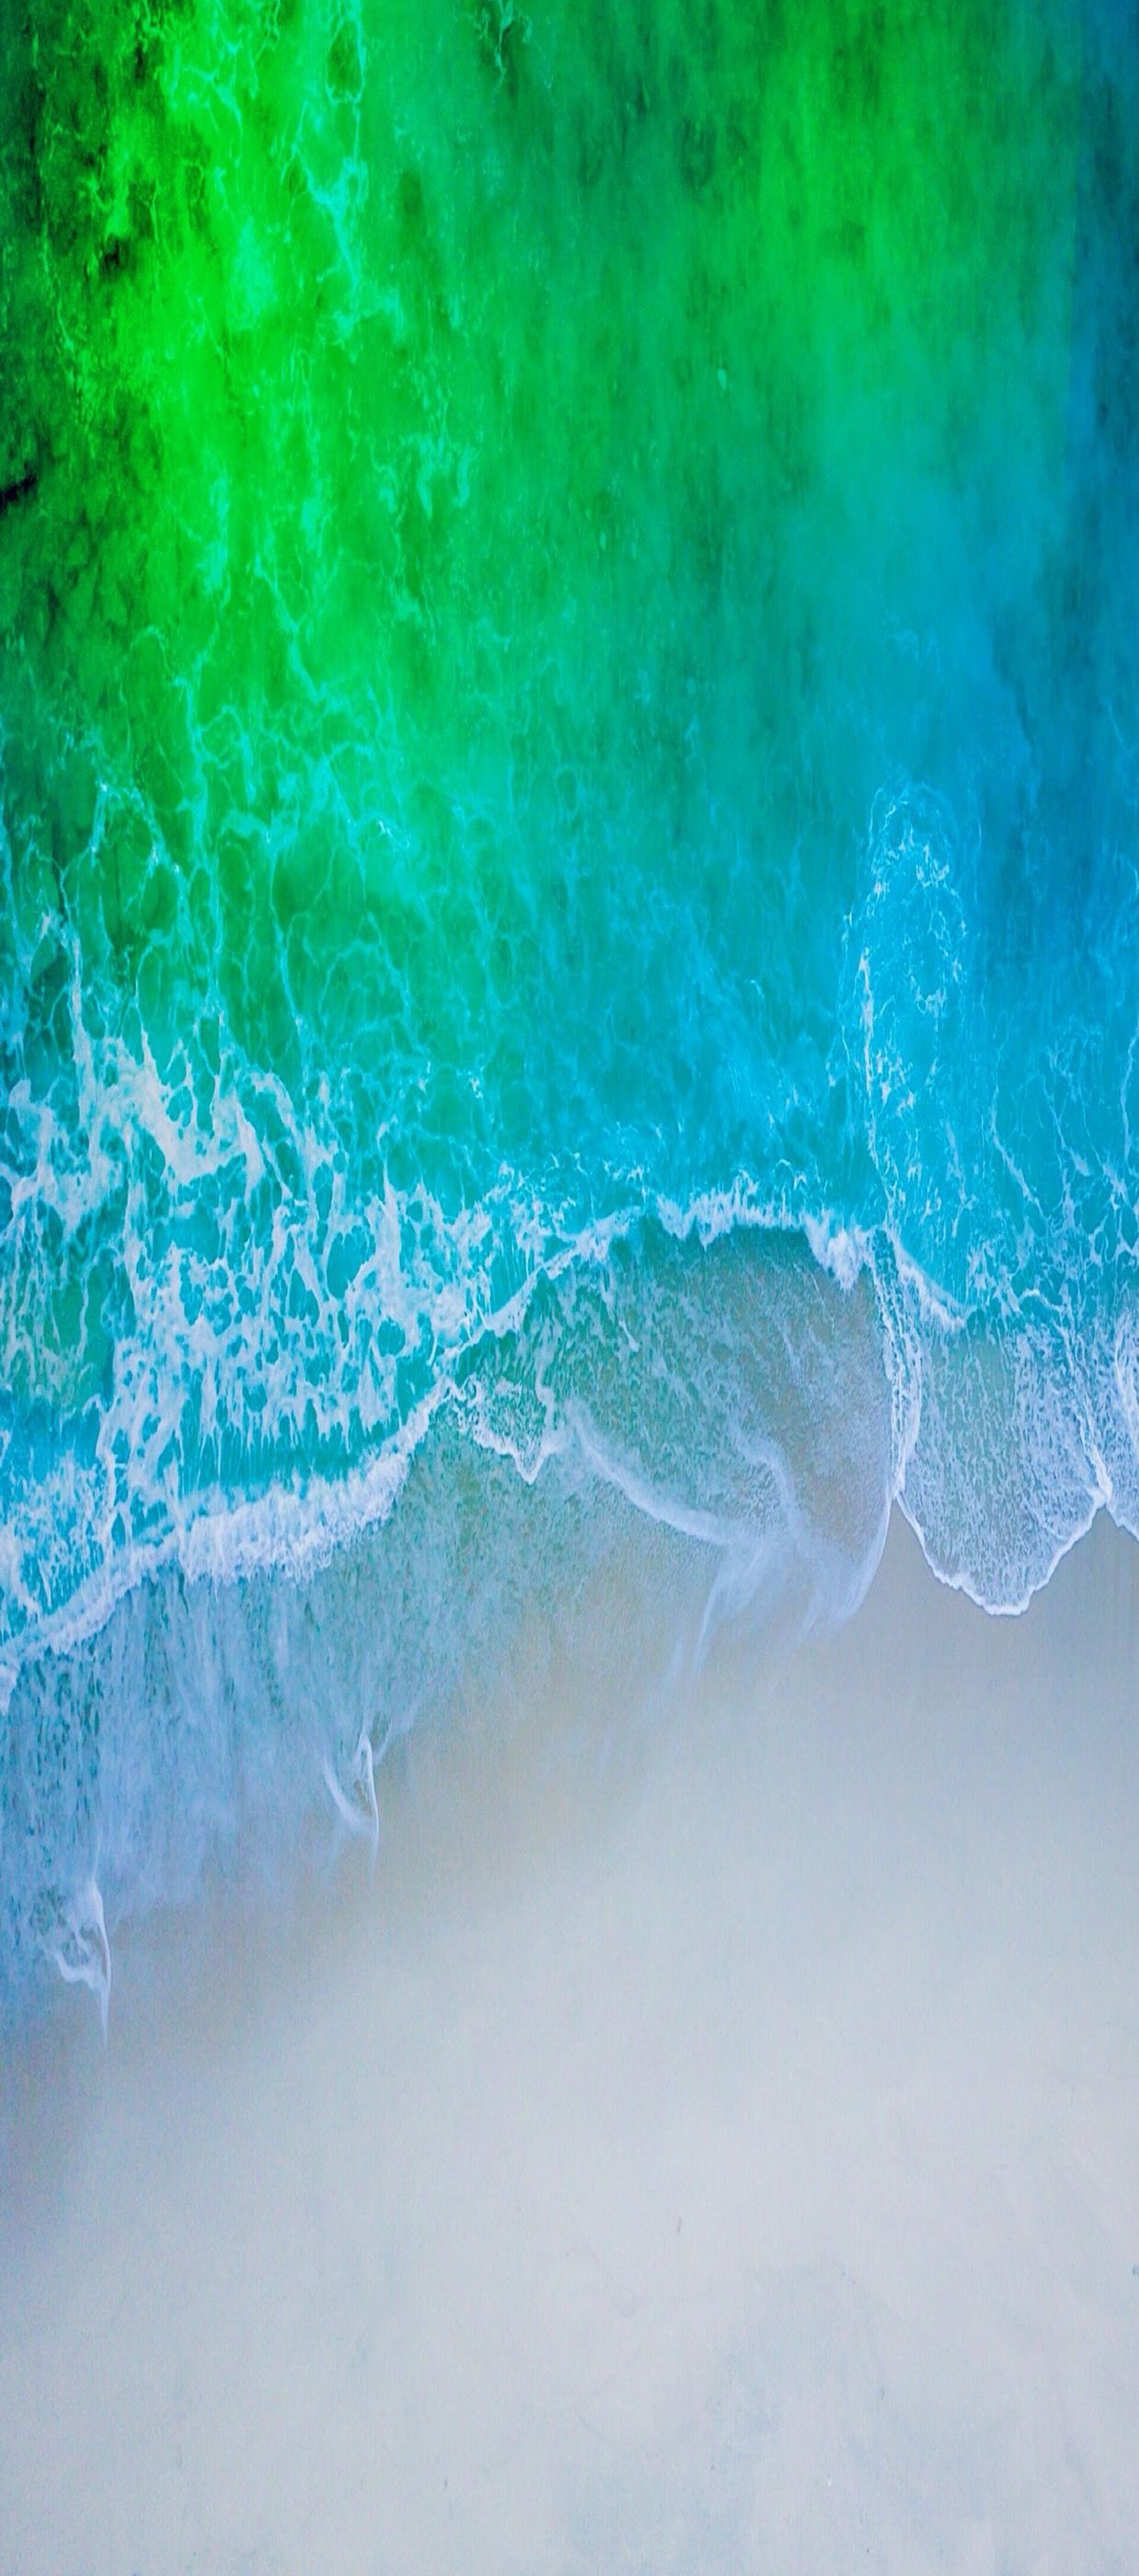 Ios iPhone X Aqua Blue Water Beach Wave Ocean Apple